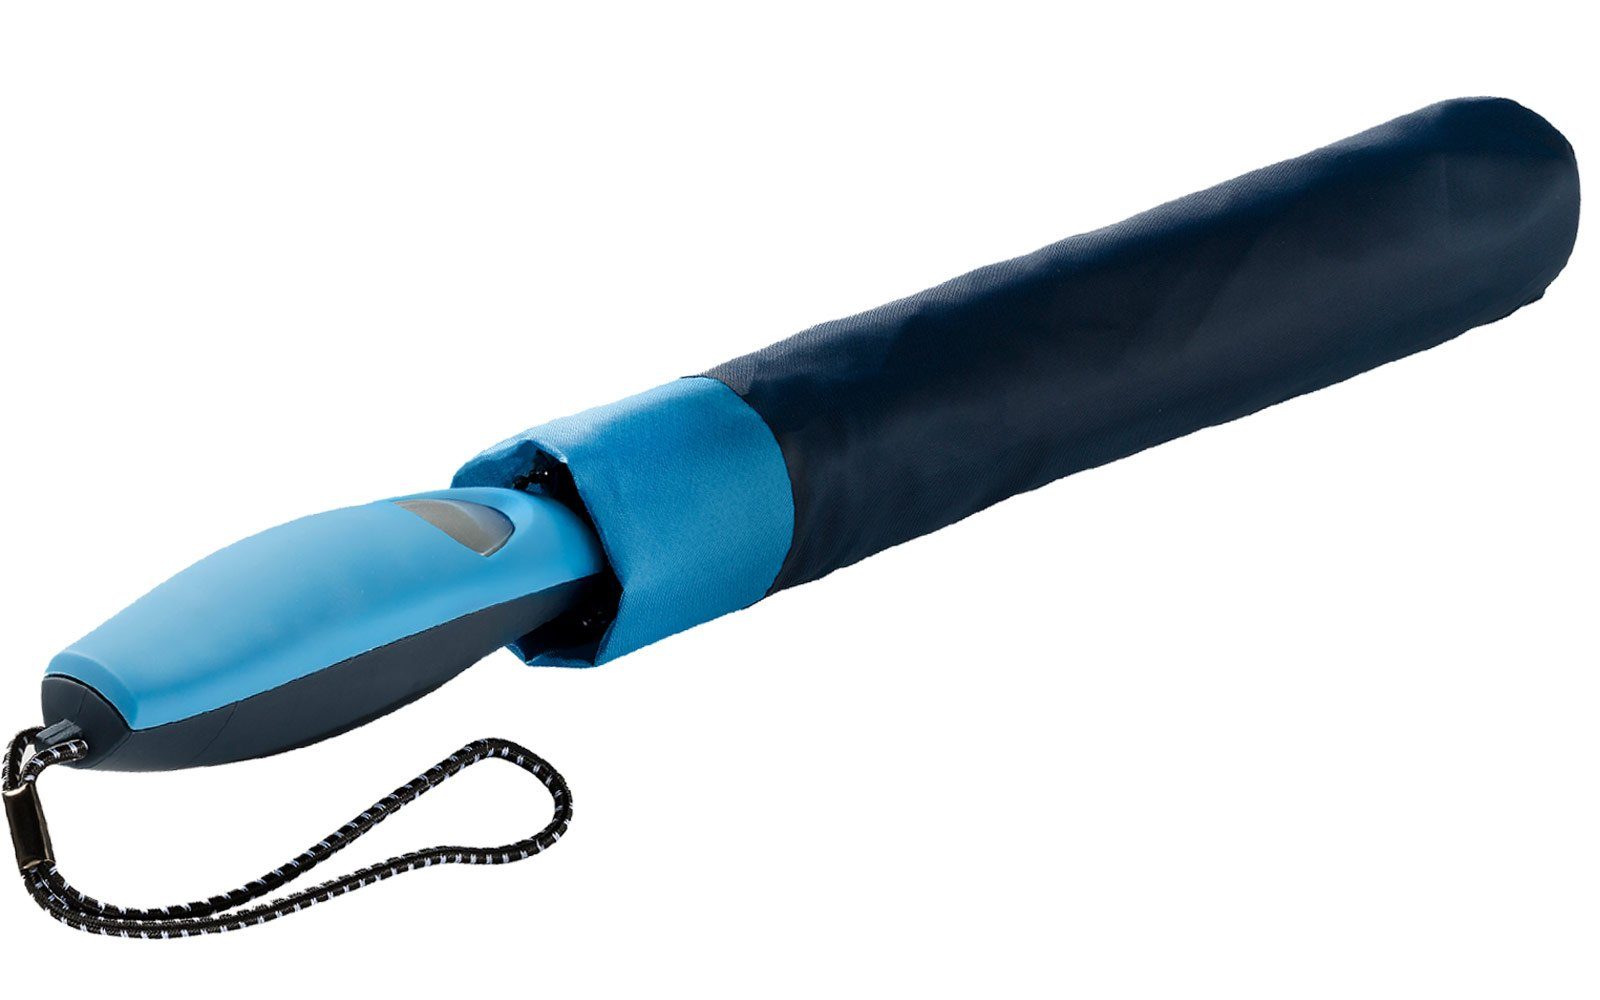 Impliva Taschenregenschirm Falconetti Griff, Auf-Automatik farblich auffallend passender navy-blau